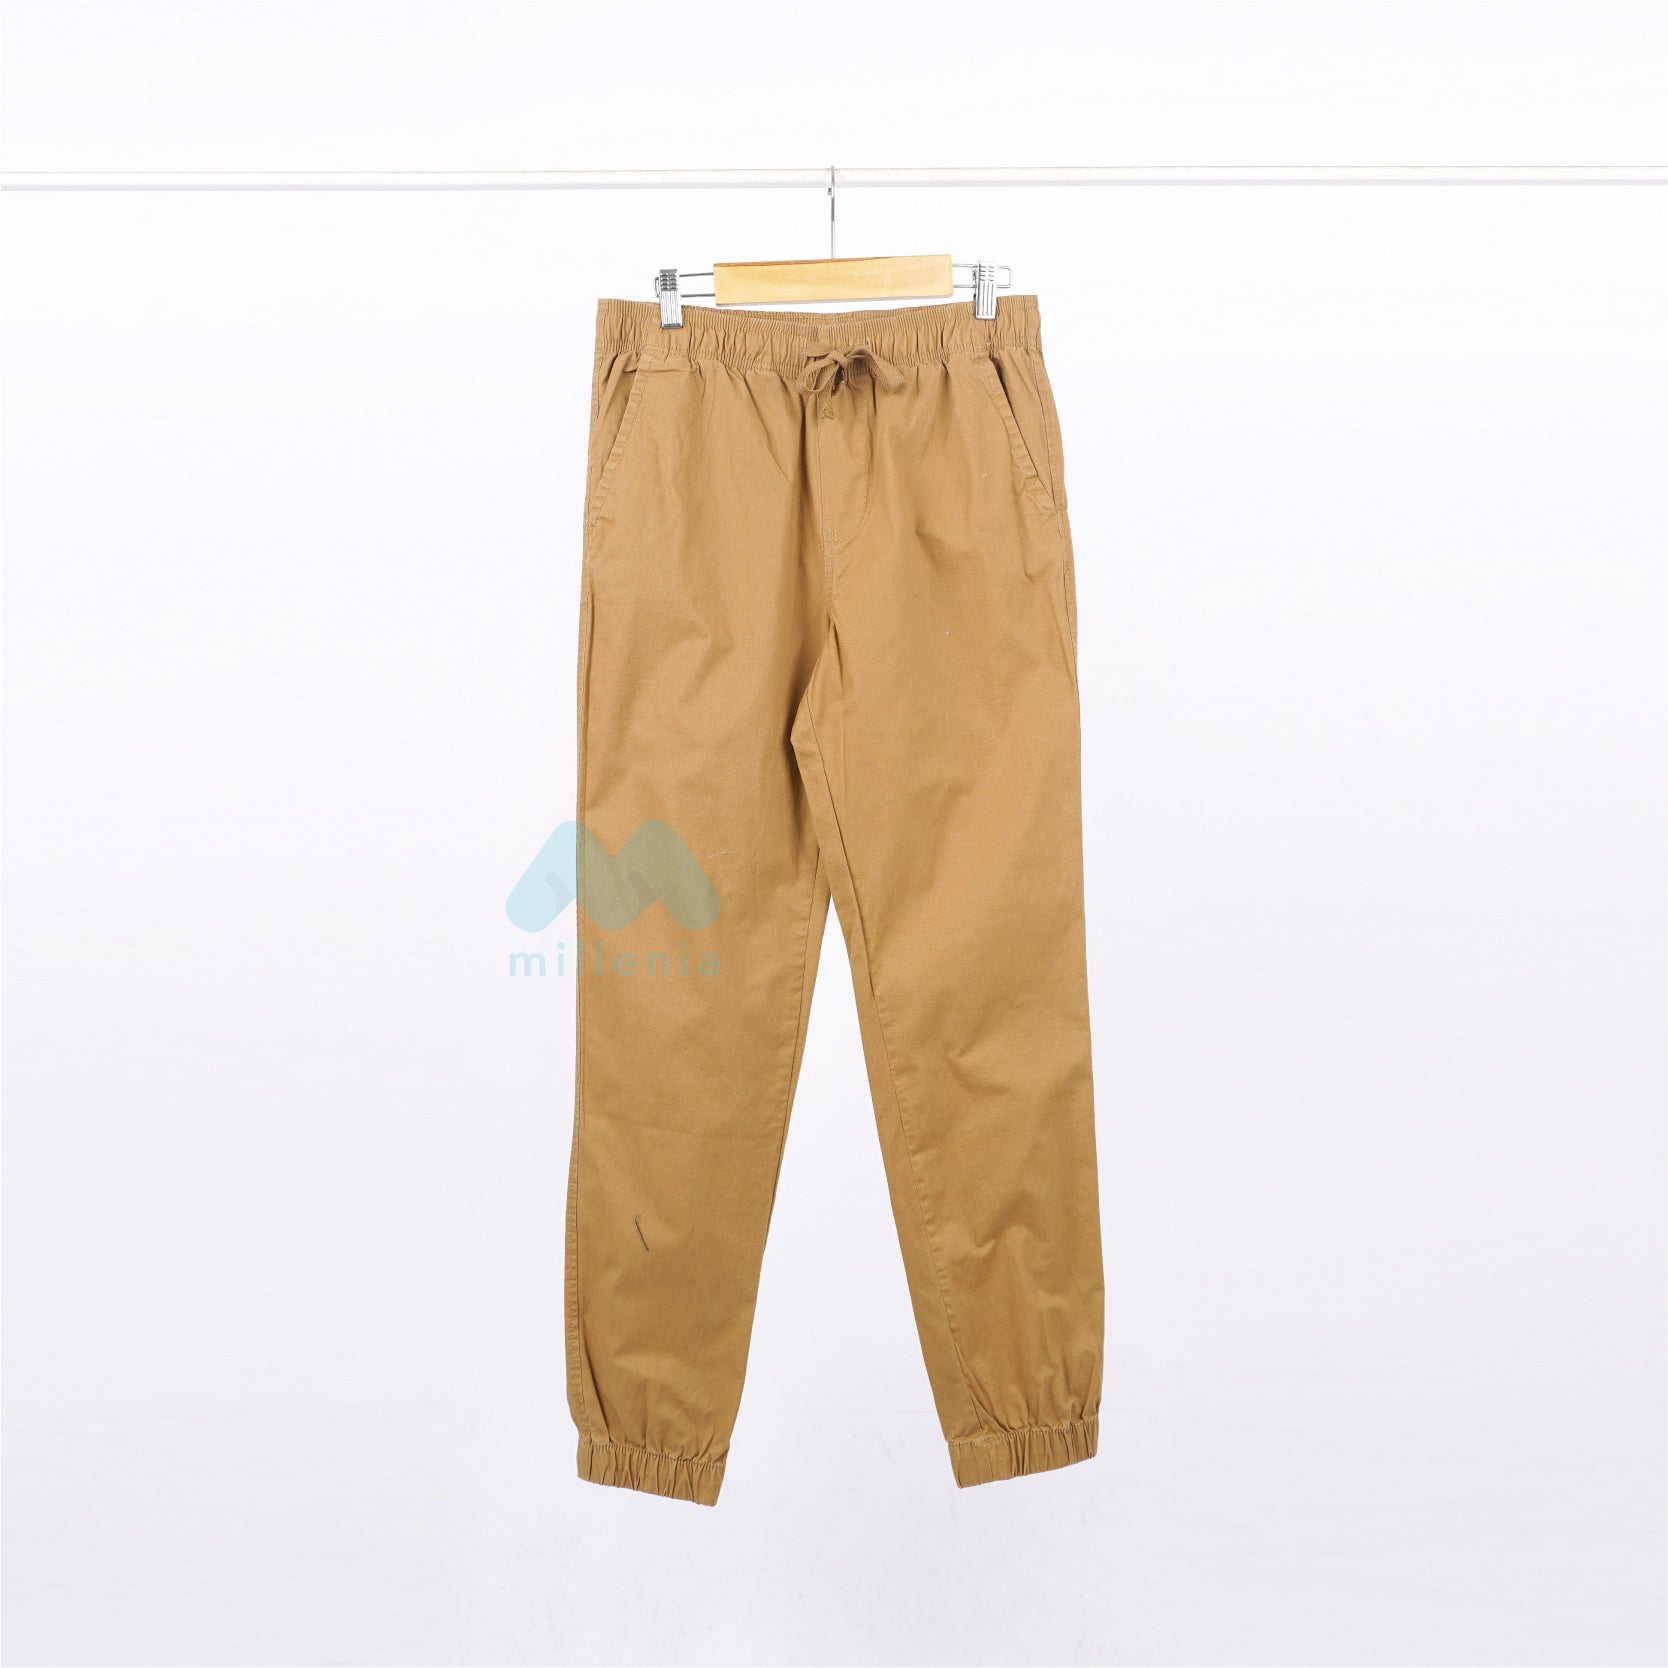 Celana Panjang Pria - Strech Twill Jogger (MO-APJM 01)